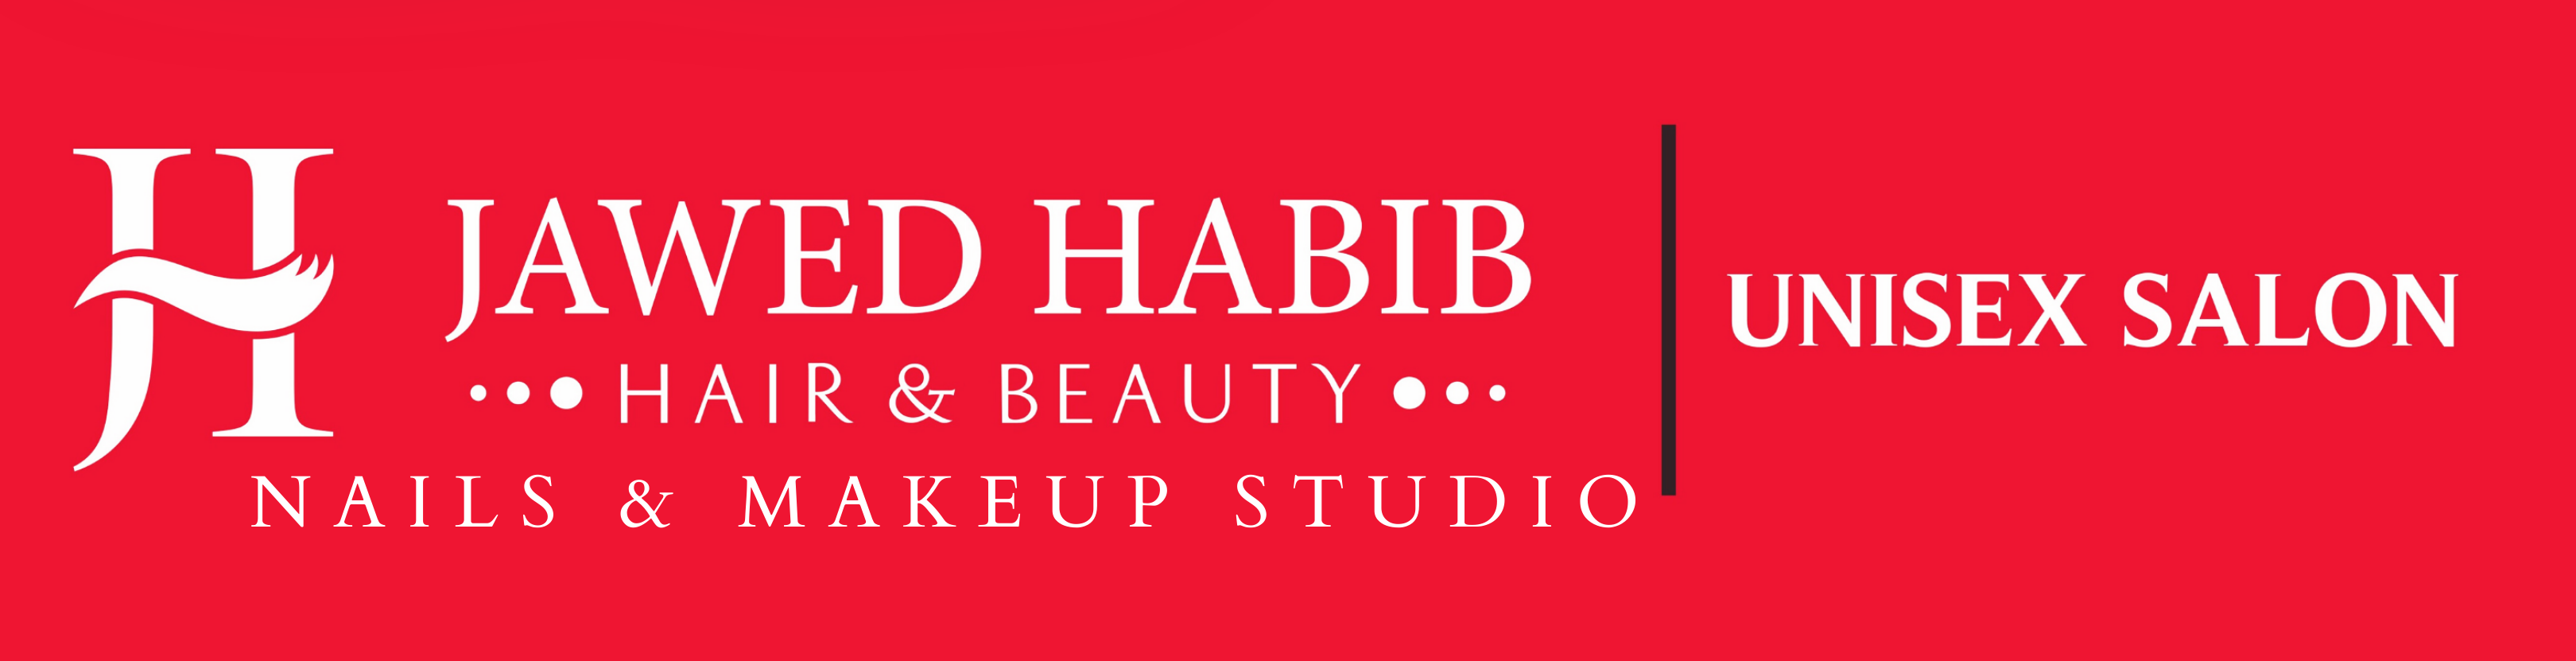 Jawed Habib - Best Beauty Salon in Muzaffarpur, Bihar